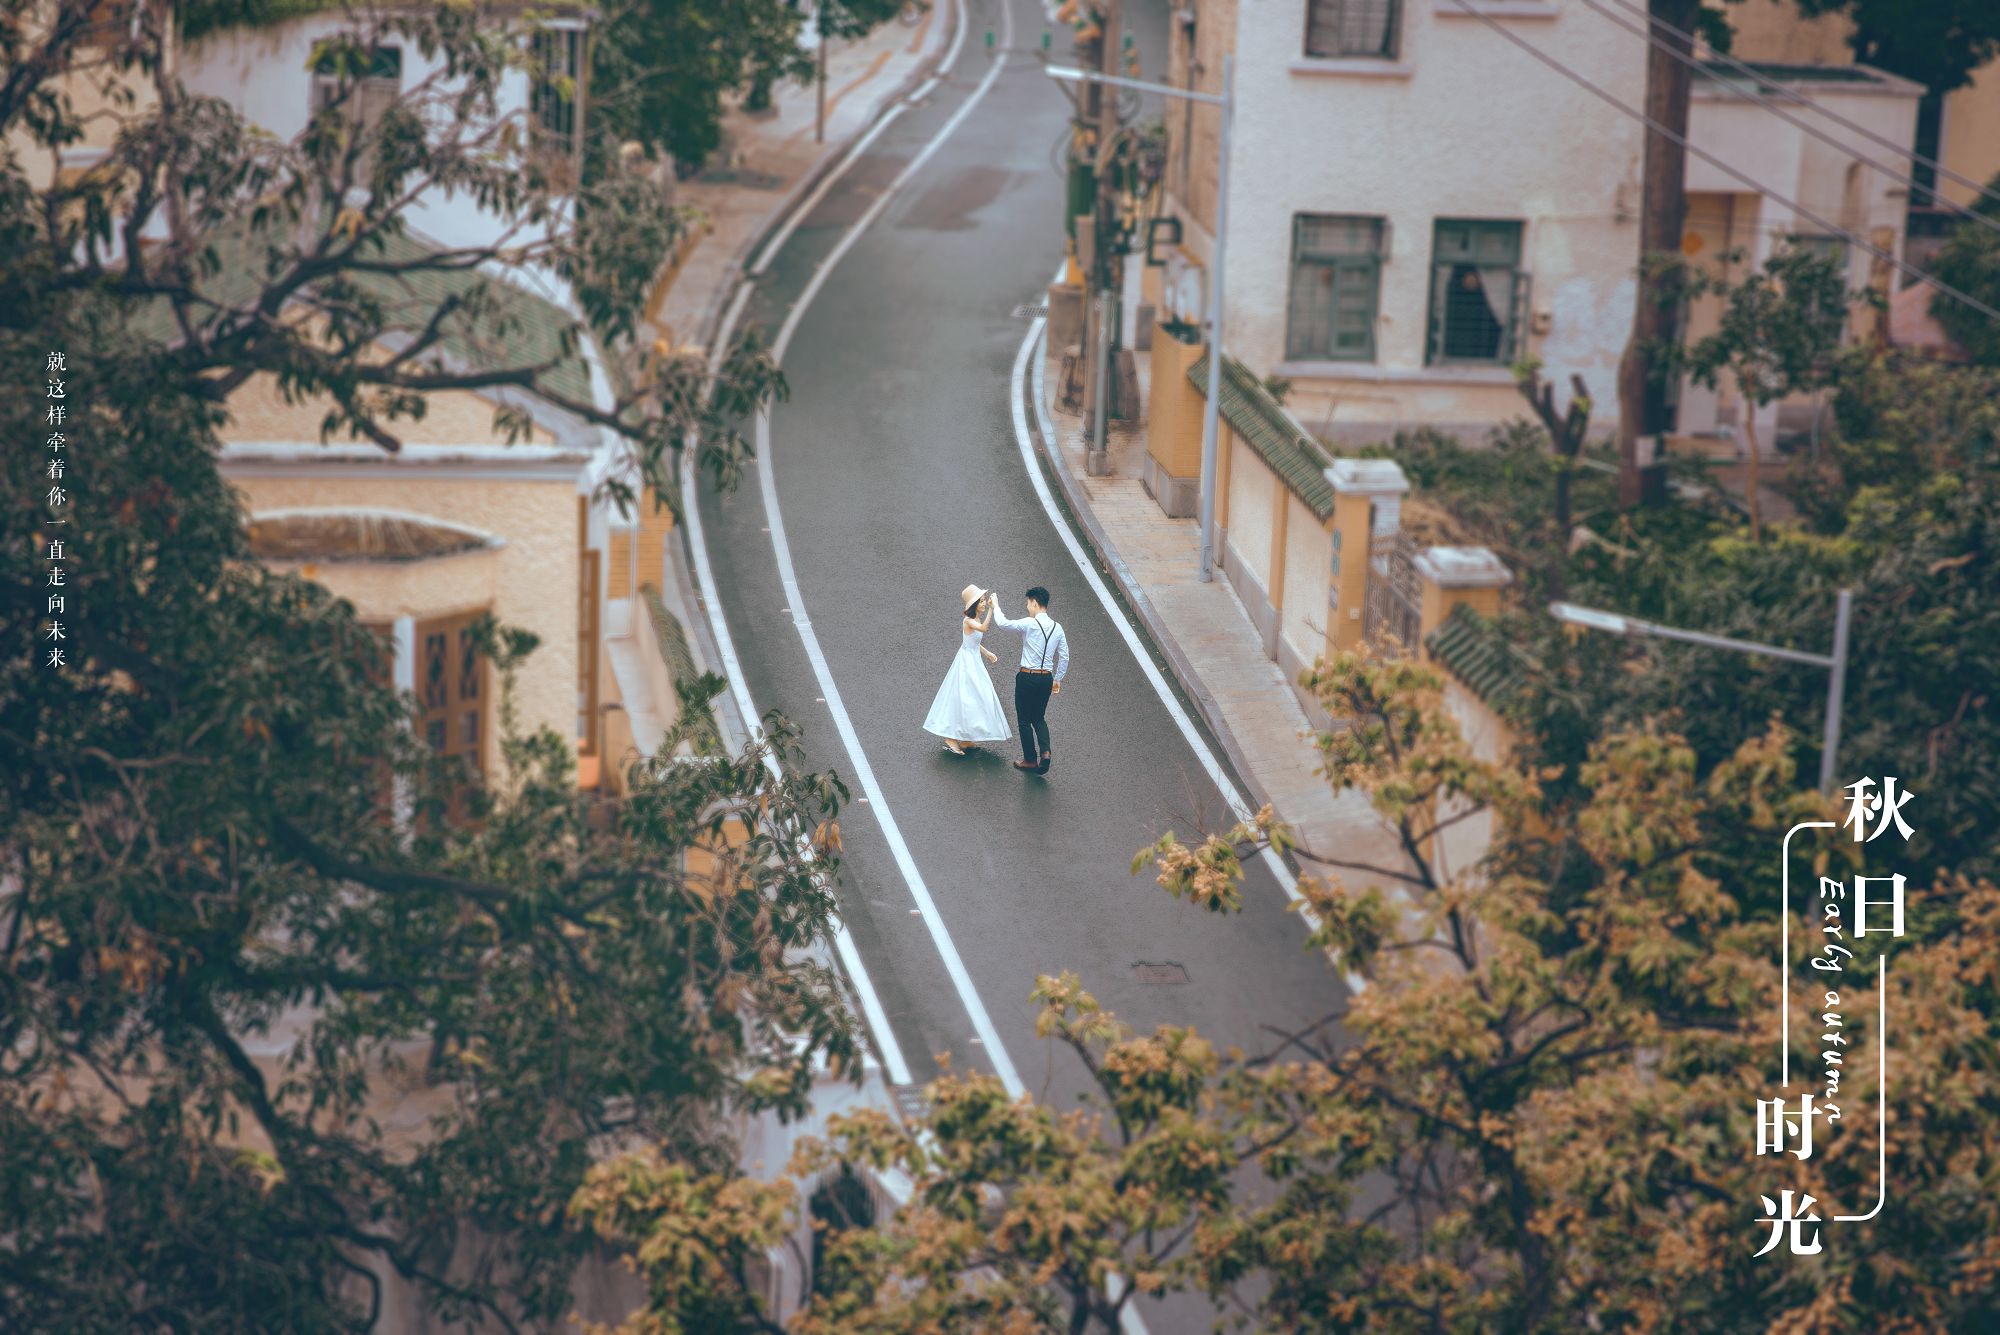 2018年11月广州结婚照,韶关婚纱照,婚纱照图片